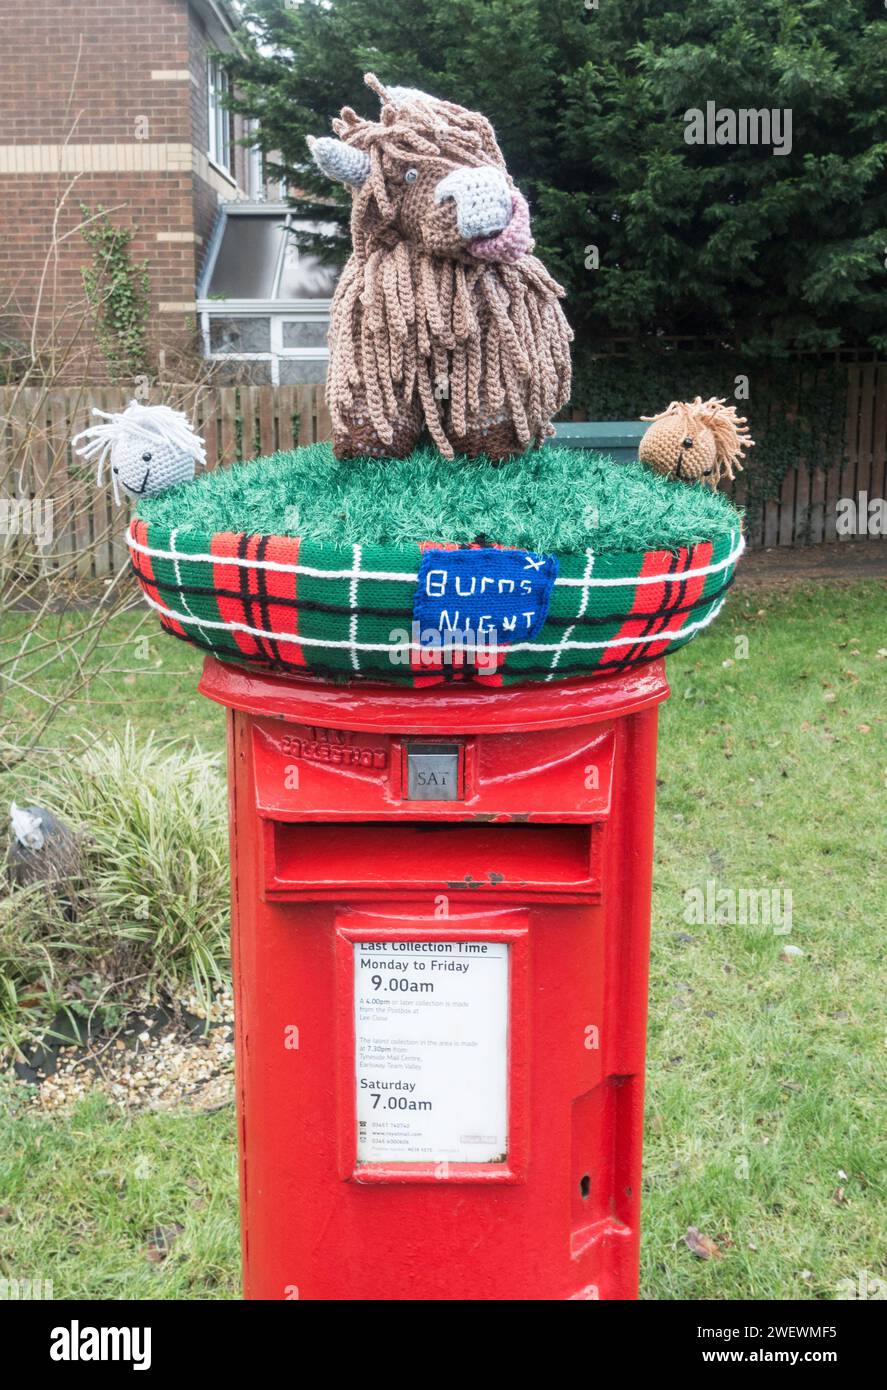 Eine Burns Night gestrickte Hochlandkuh und Schafe auf einem Postkarton, England, Großbritannien Stockfoto